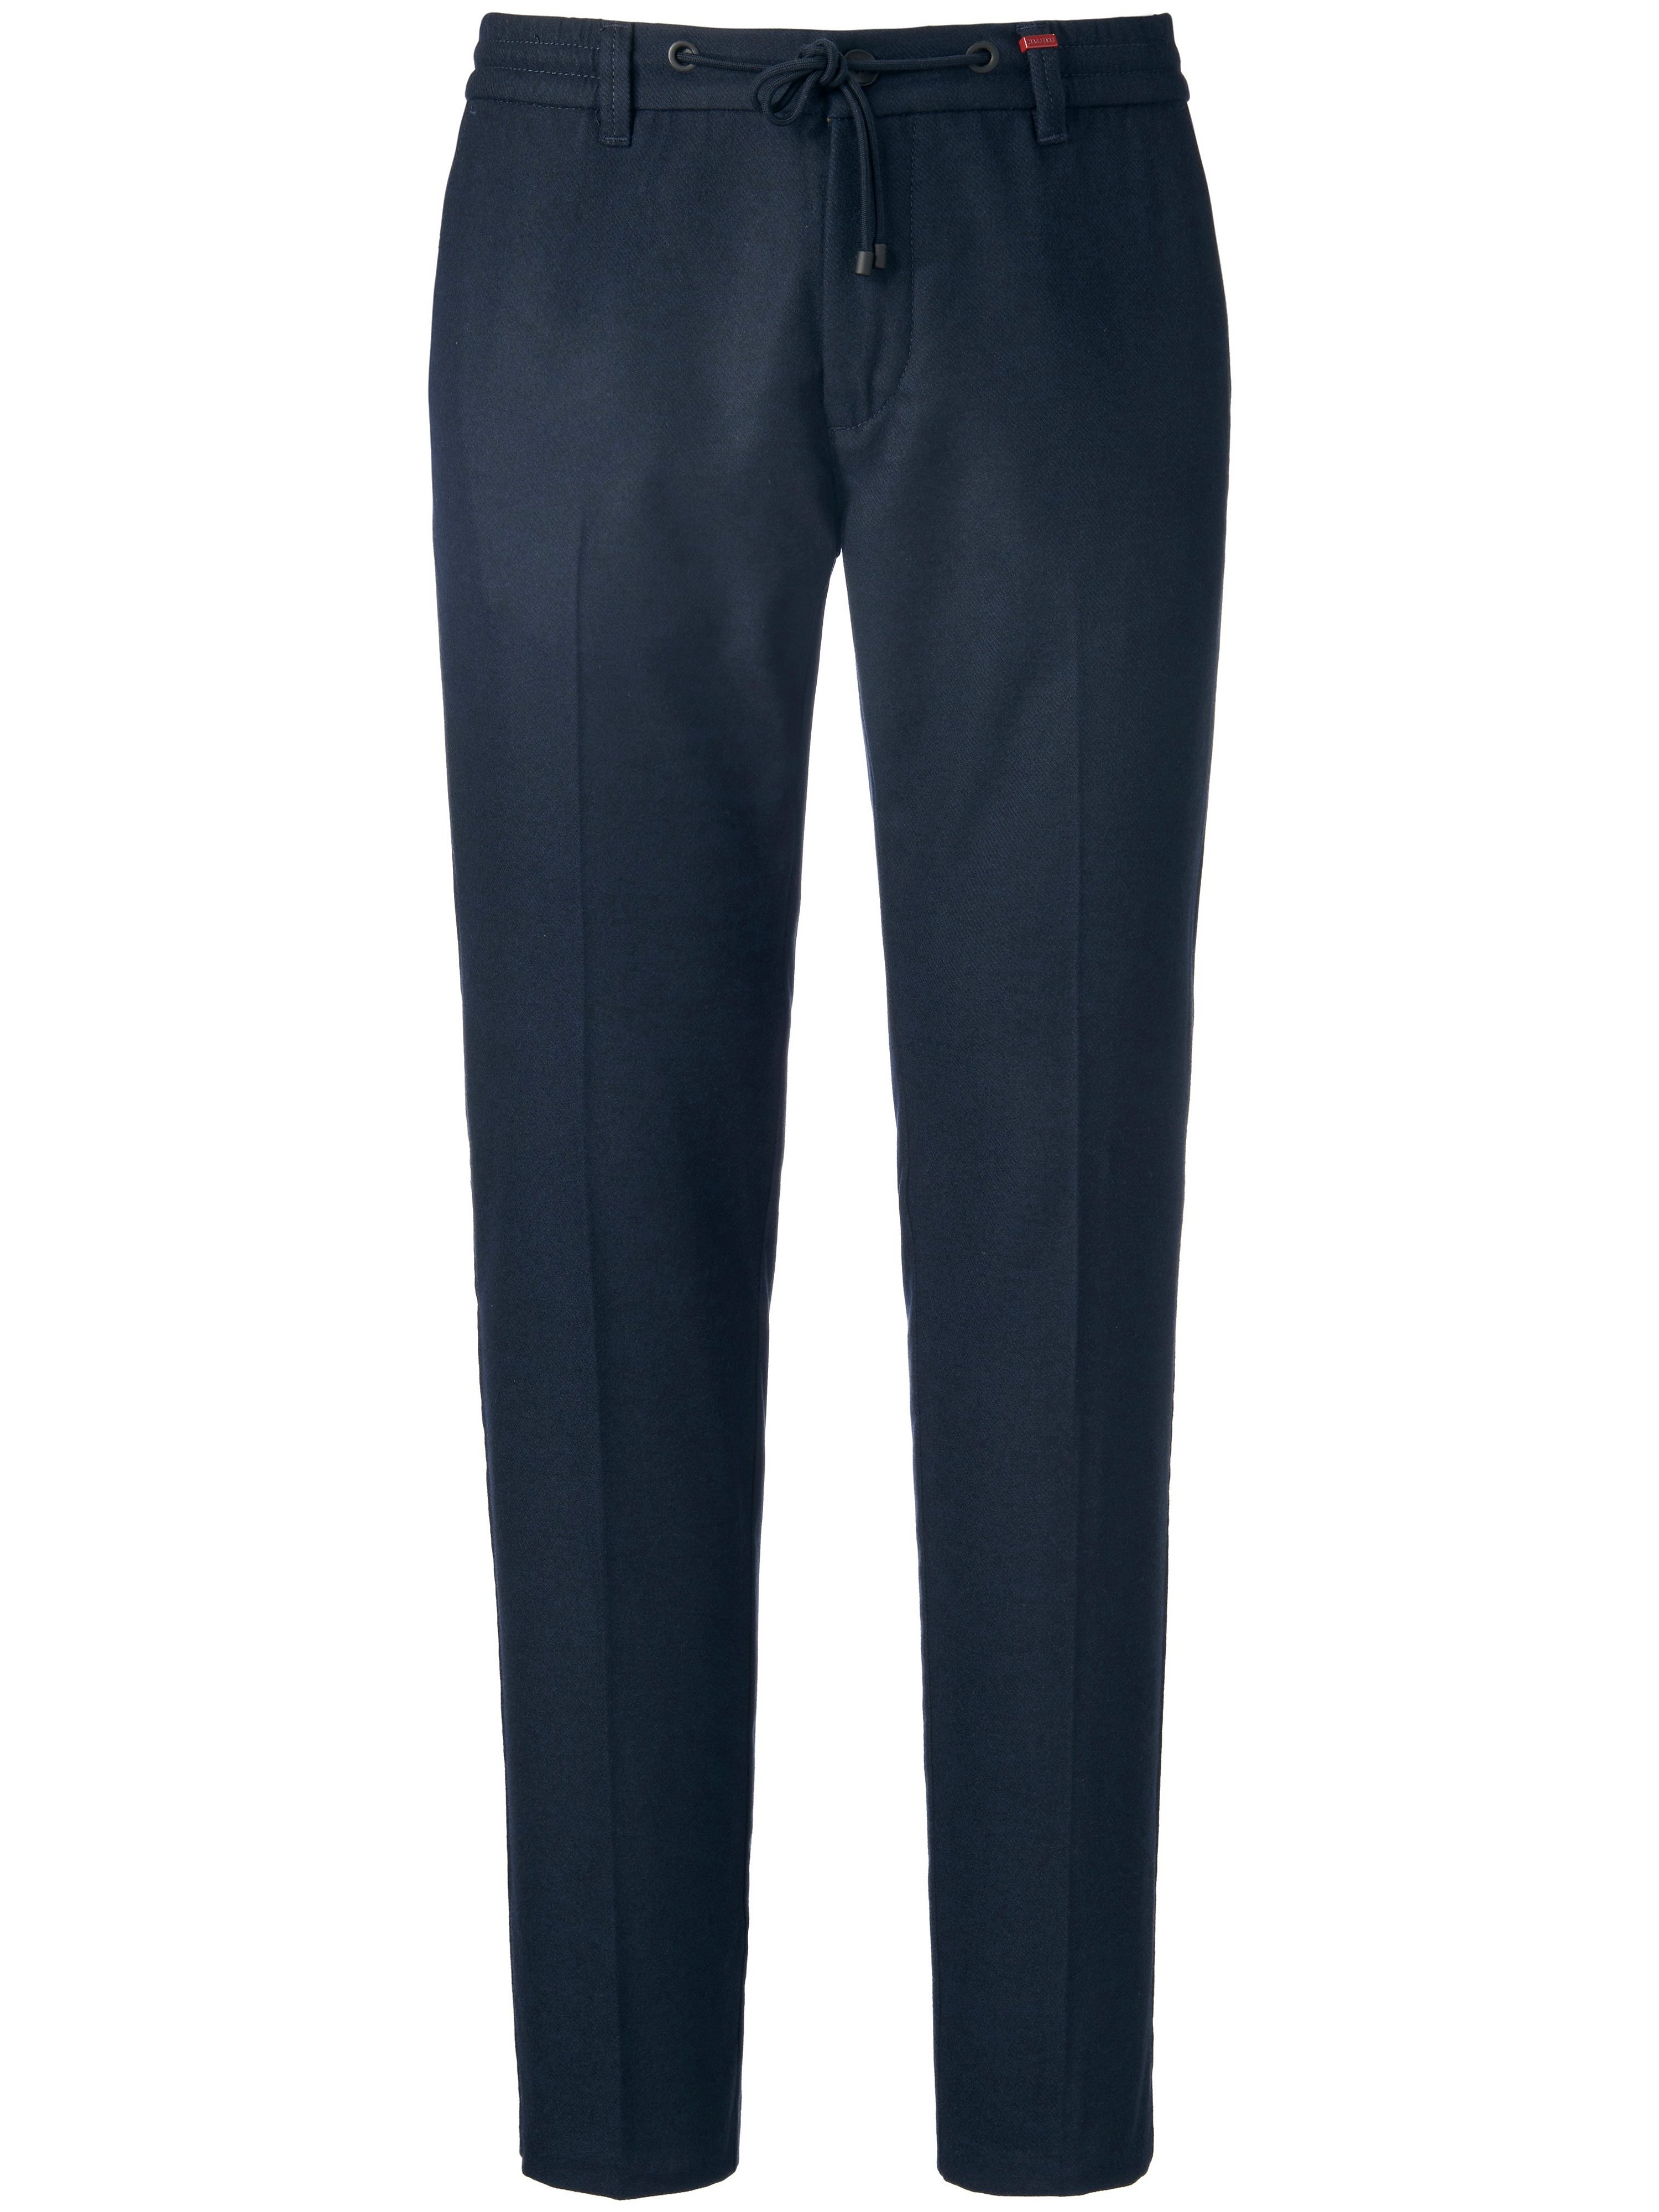 Le pantalon  Mac bleu taille 35